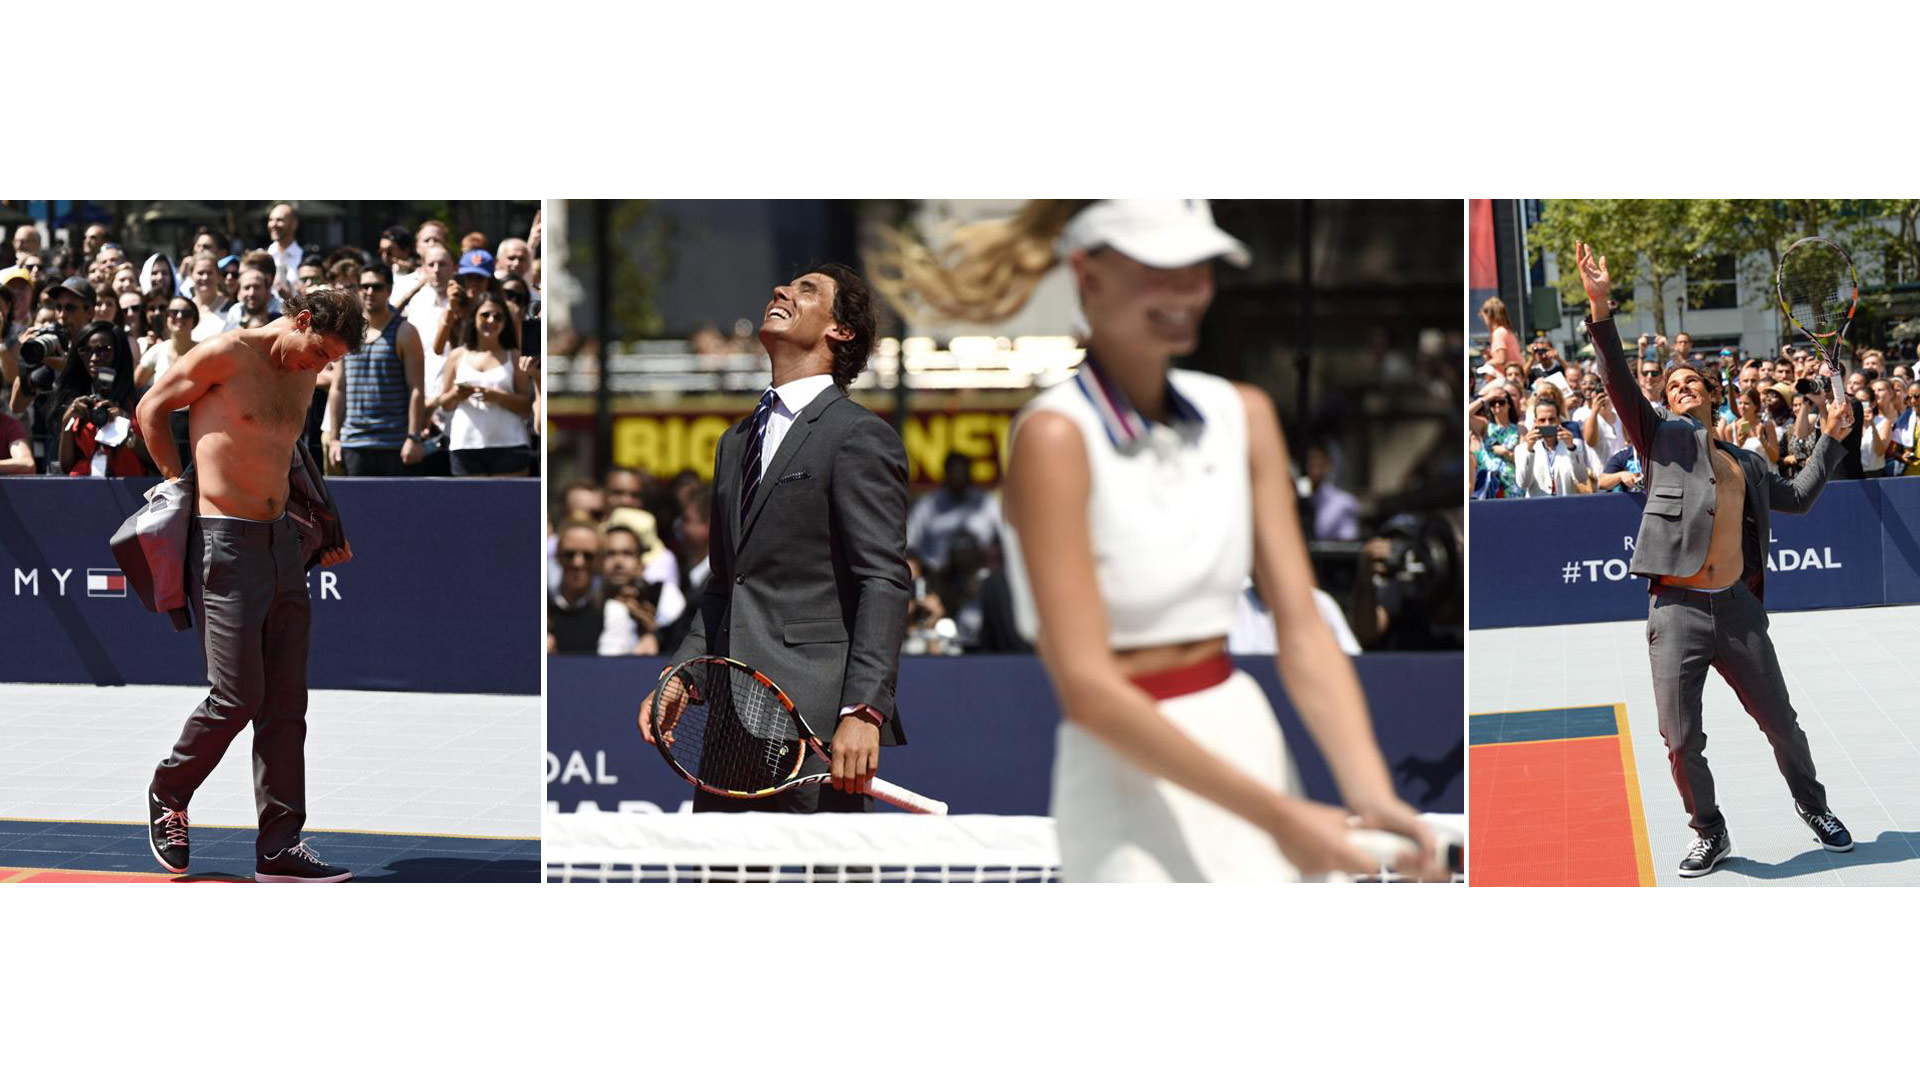 El tenista será la cara de Tommy Hilfiger, por lo que participa en eventos promocionales de la marca